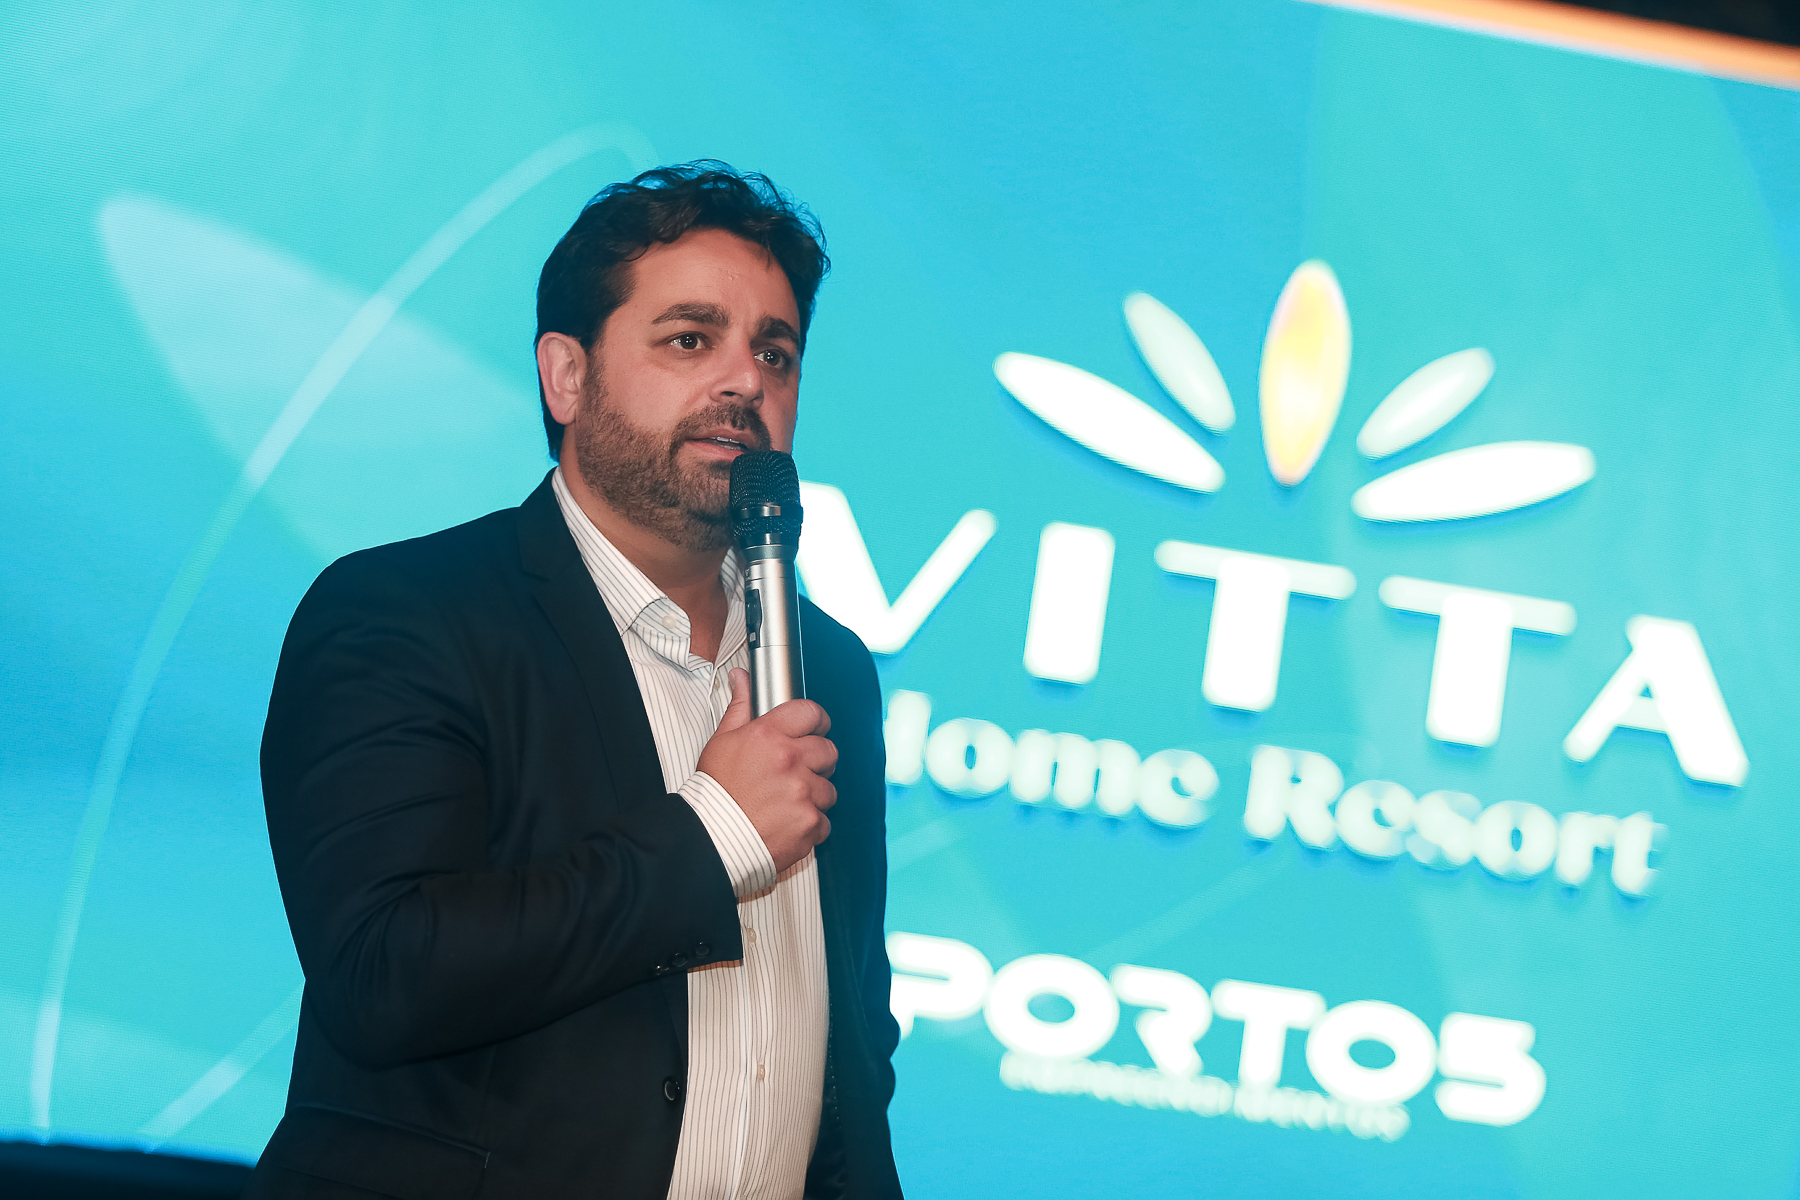 “Vitta Home Resort”: Porto5 premia corretores de imóveis e anuncia novos incentivos em noite de apresentação em Itajaí